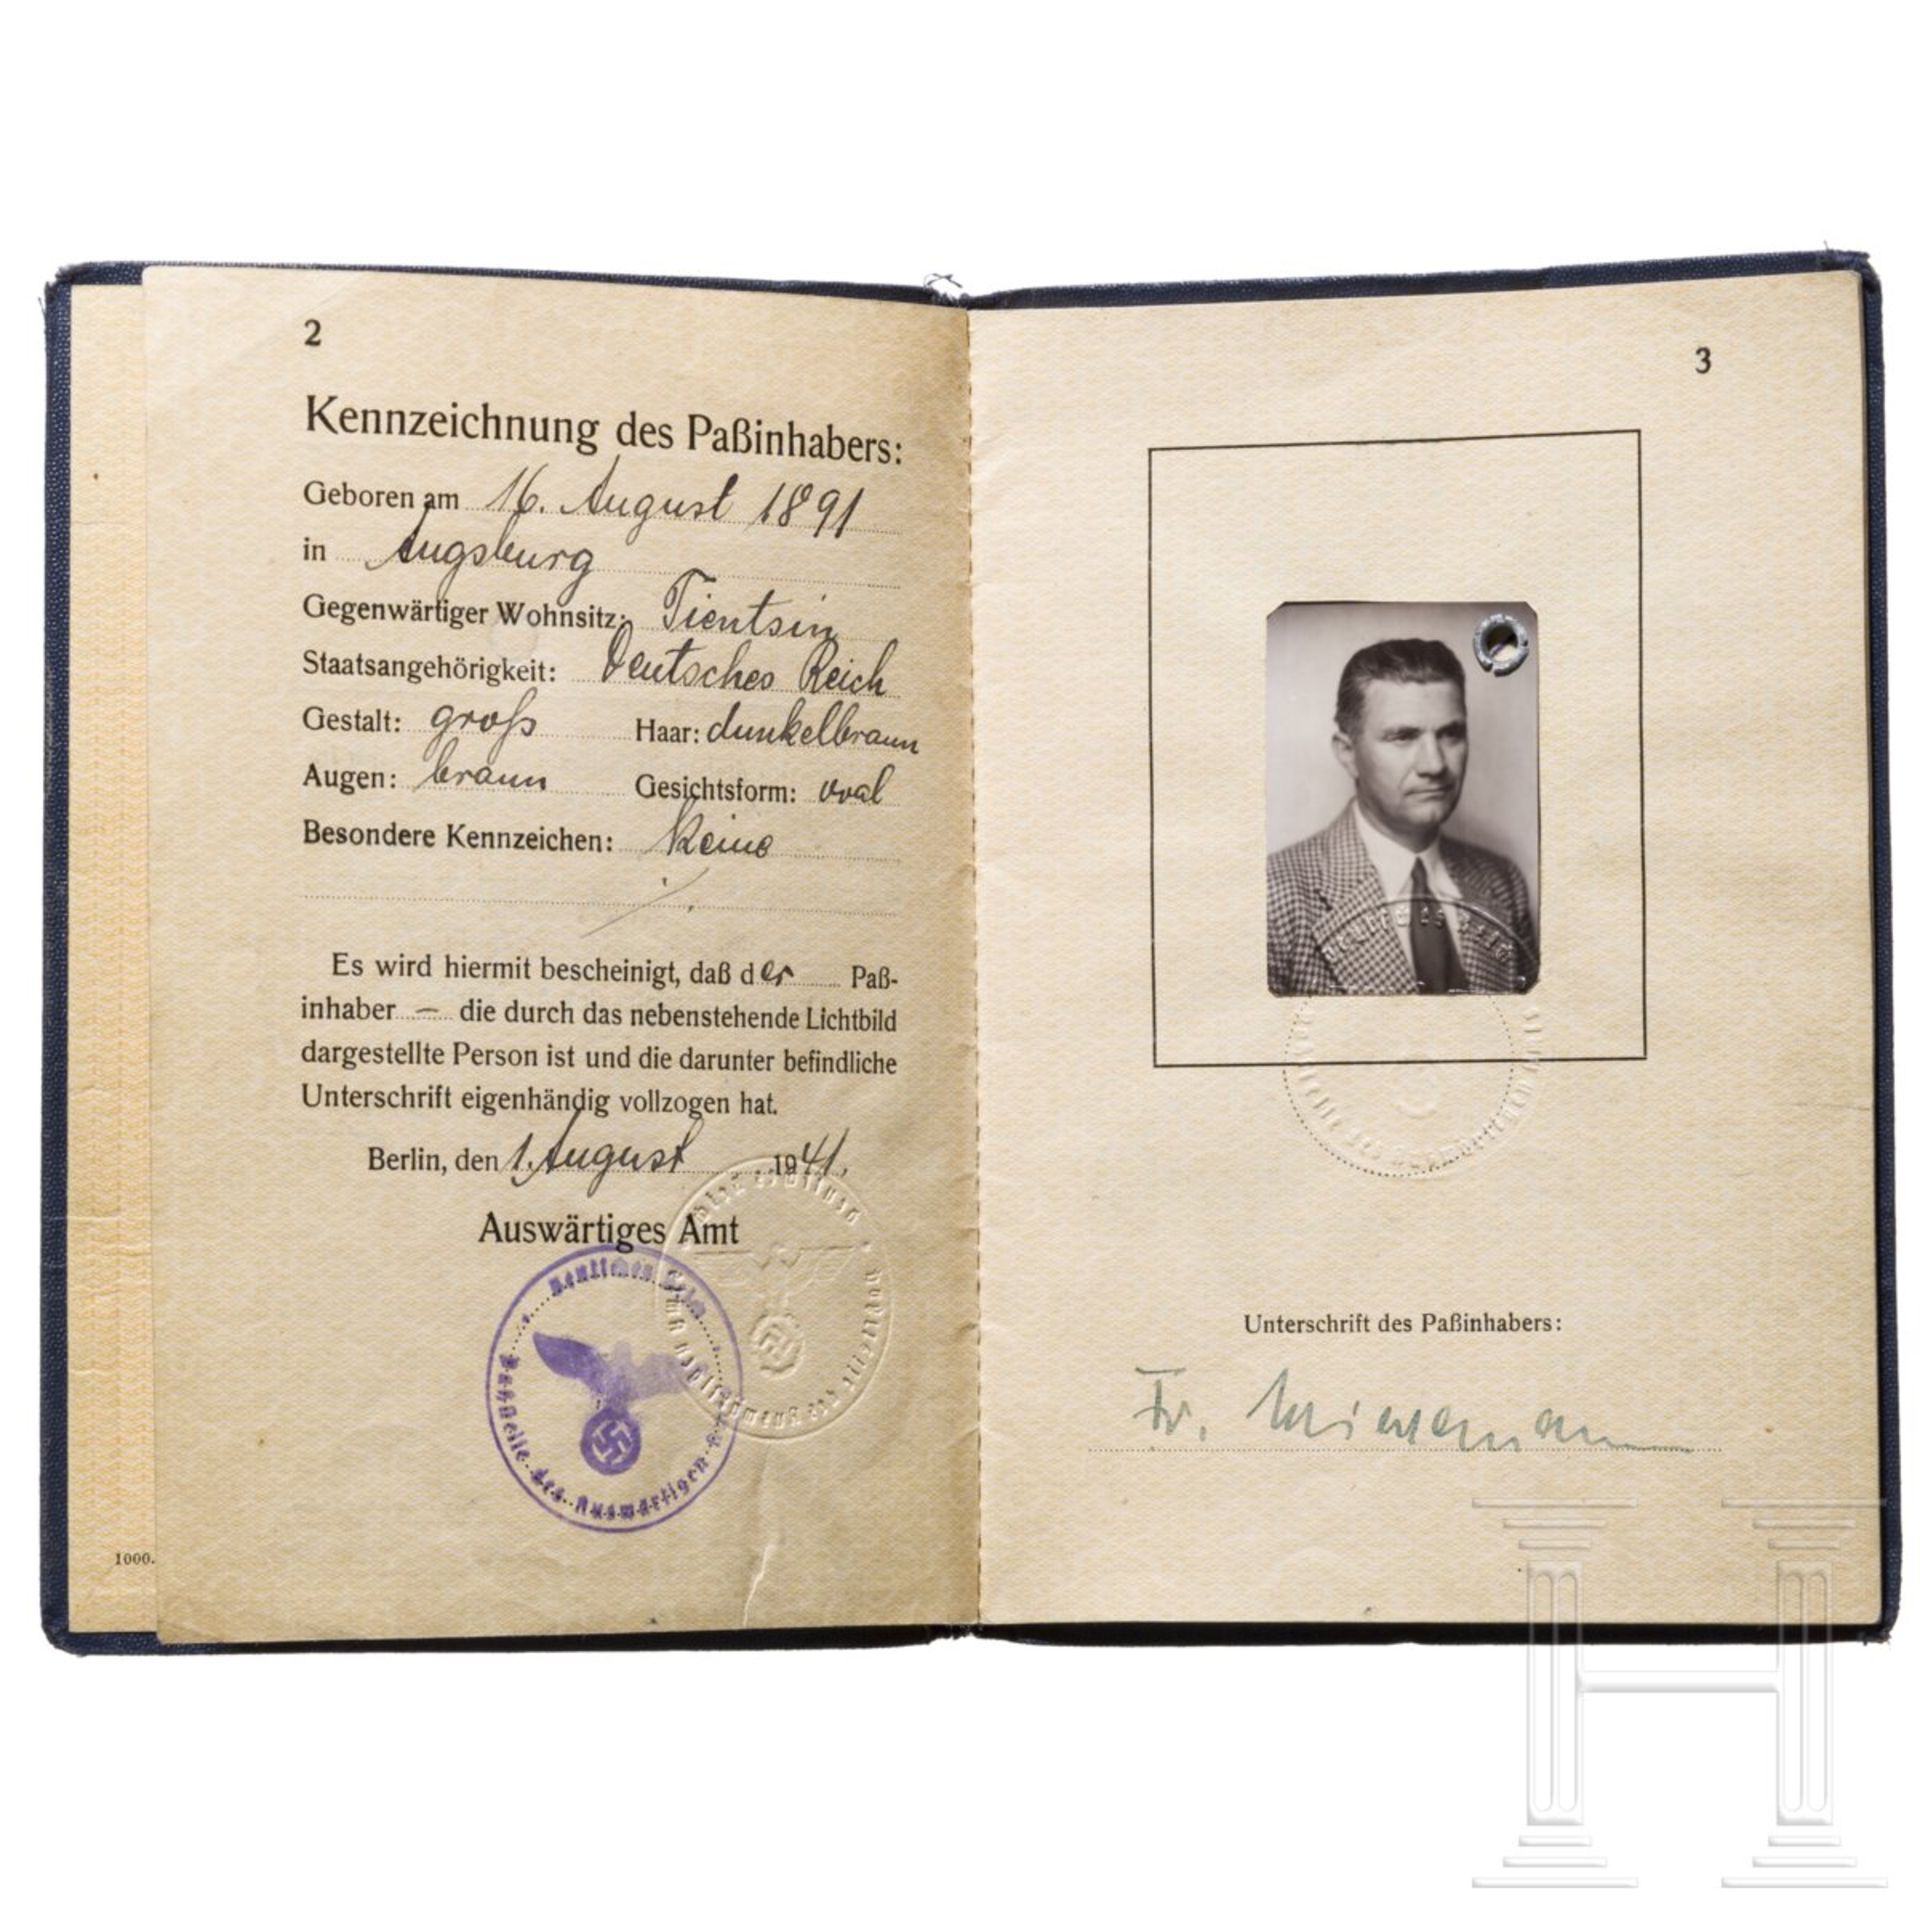 Fritz Wiedemann (1891 - 1970) - Diplomatenpass, Ausweise, Bücher und Karte aus seiner Zeit als Gener - Image 3 of 10